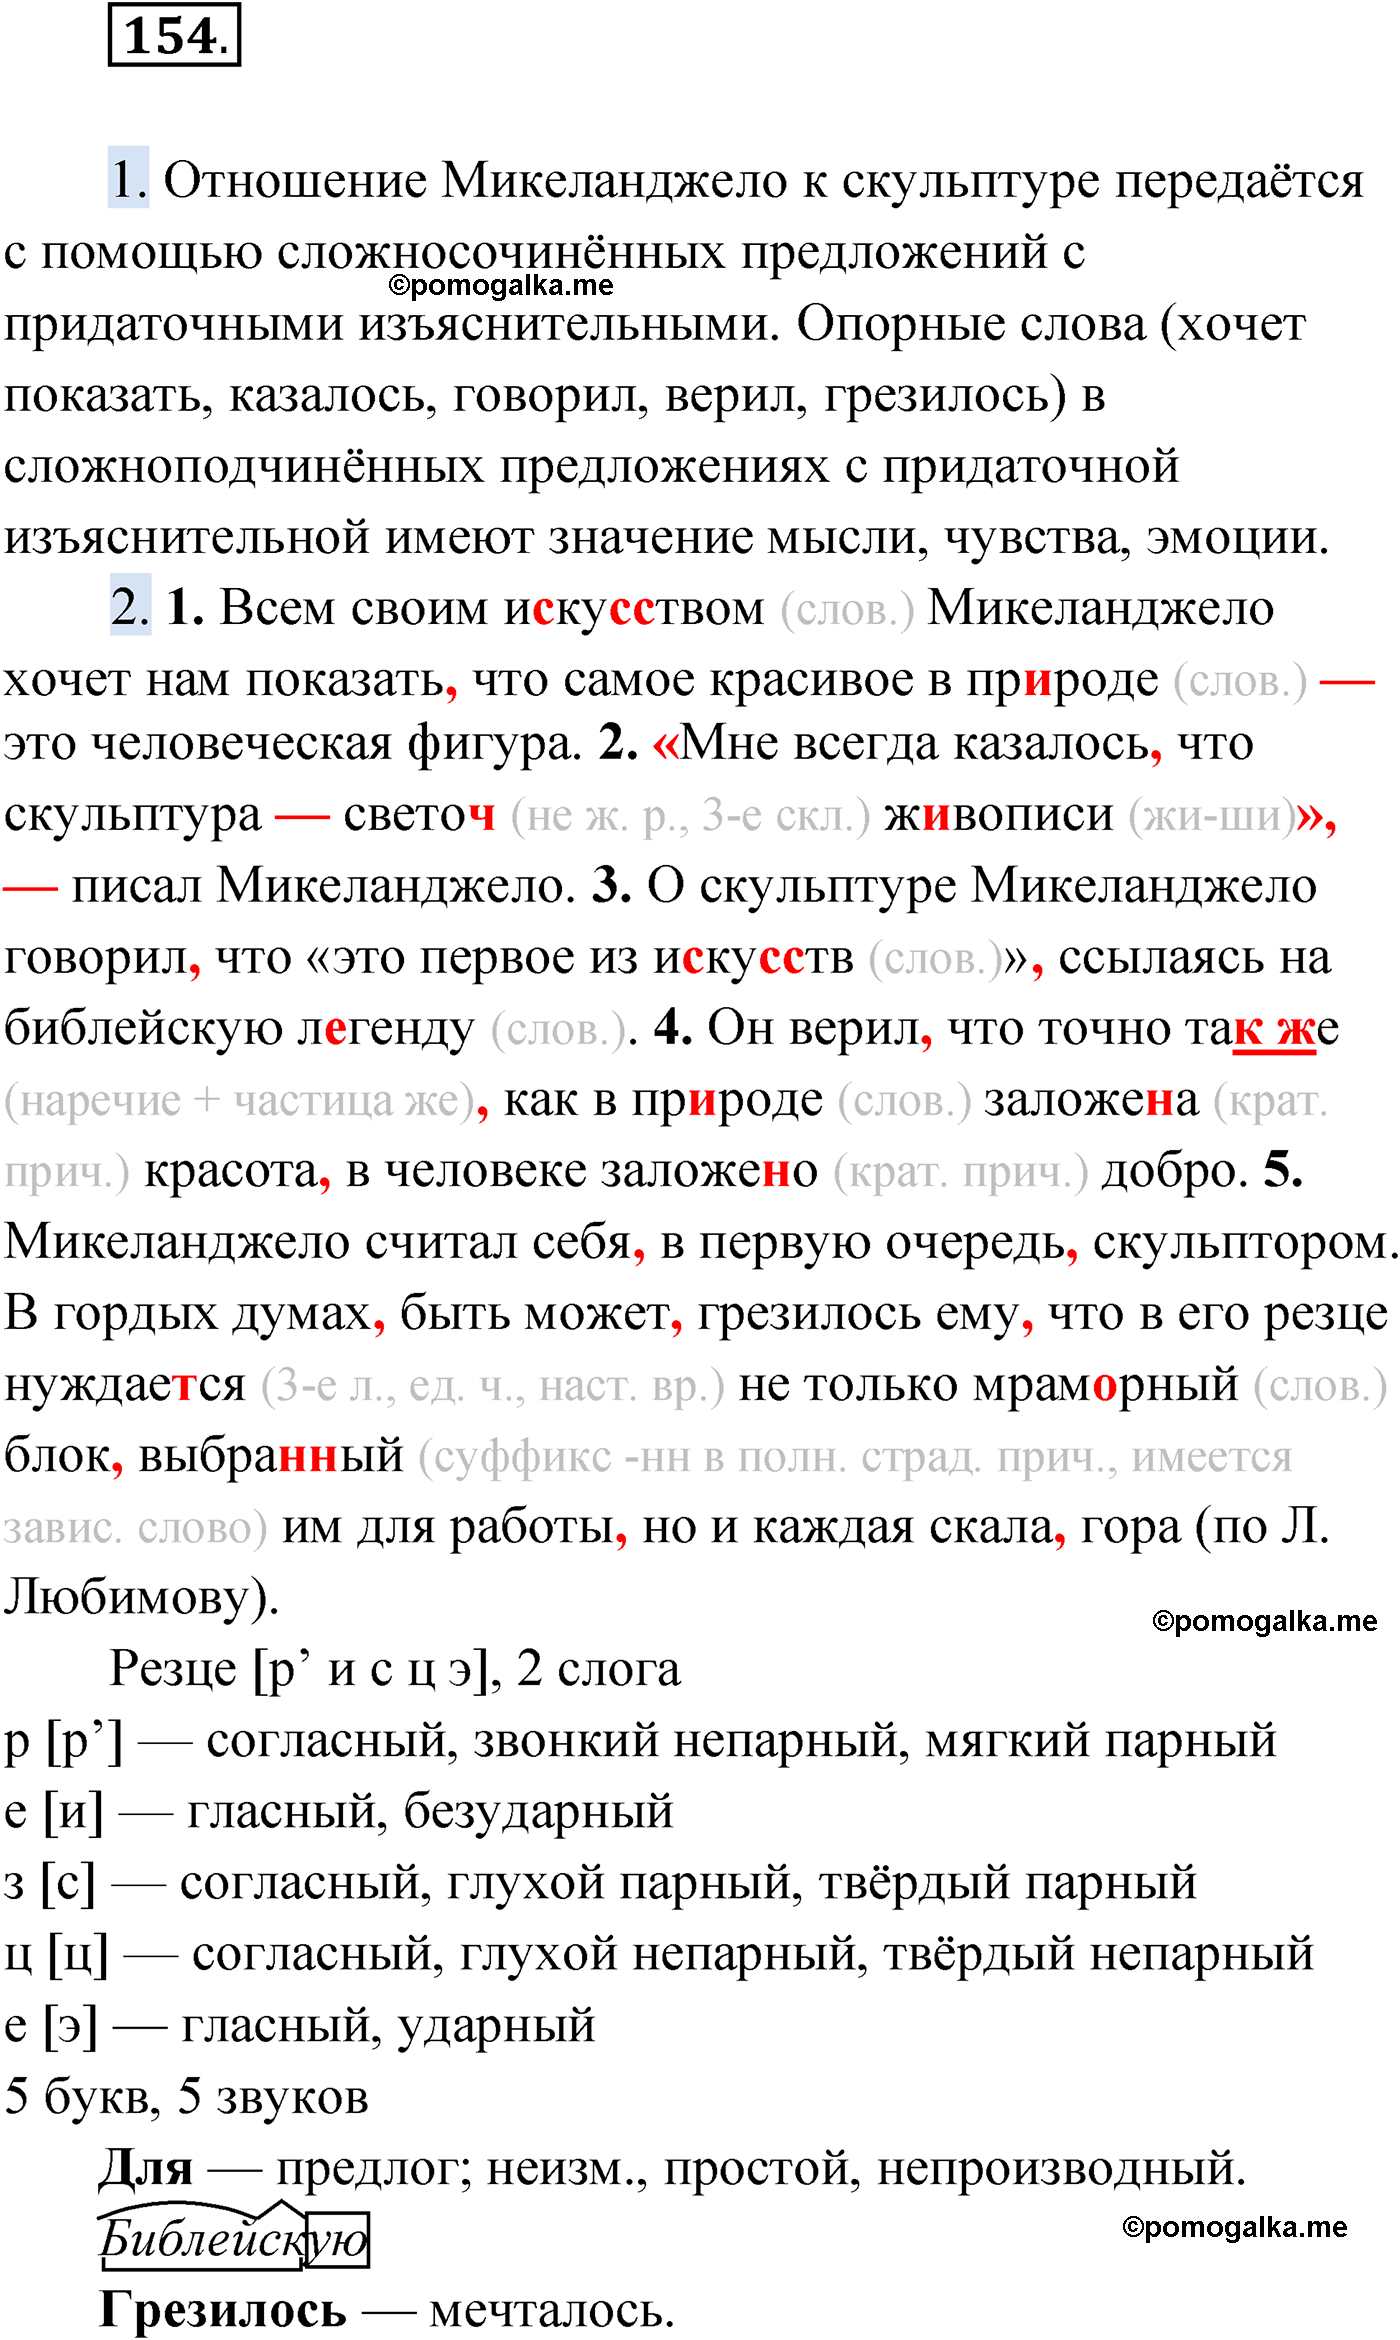 упражнение №154 русский язык 9 класс Мурина 2019 год